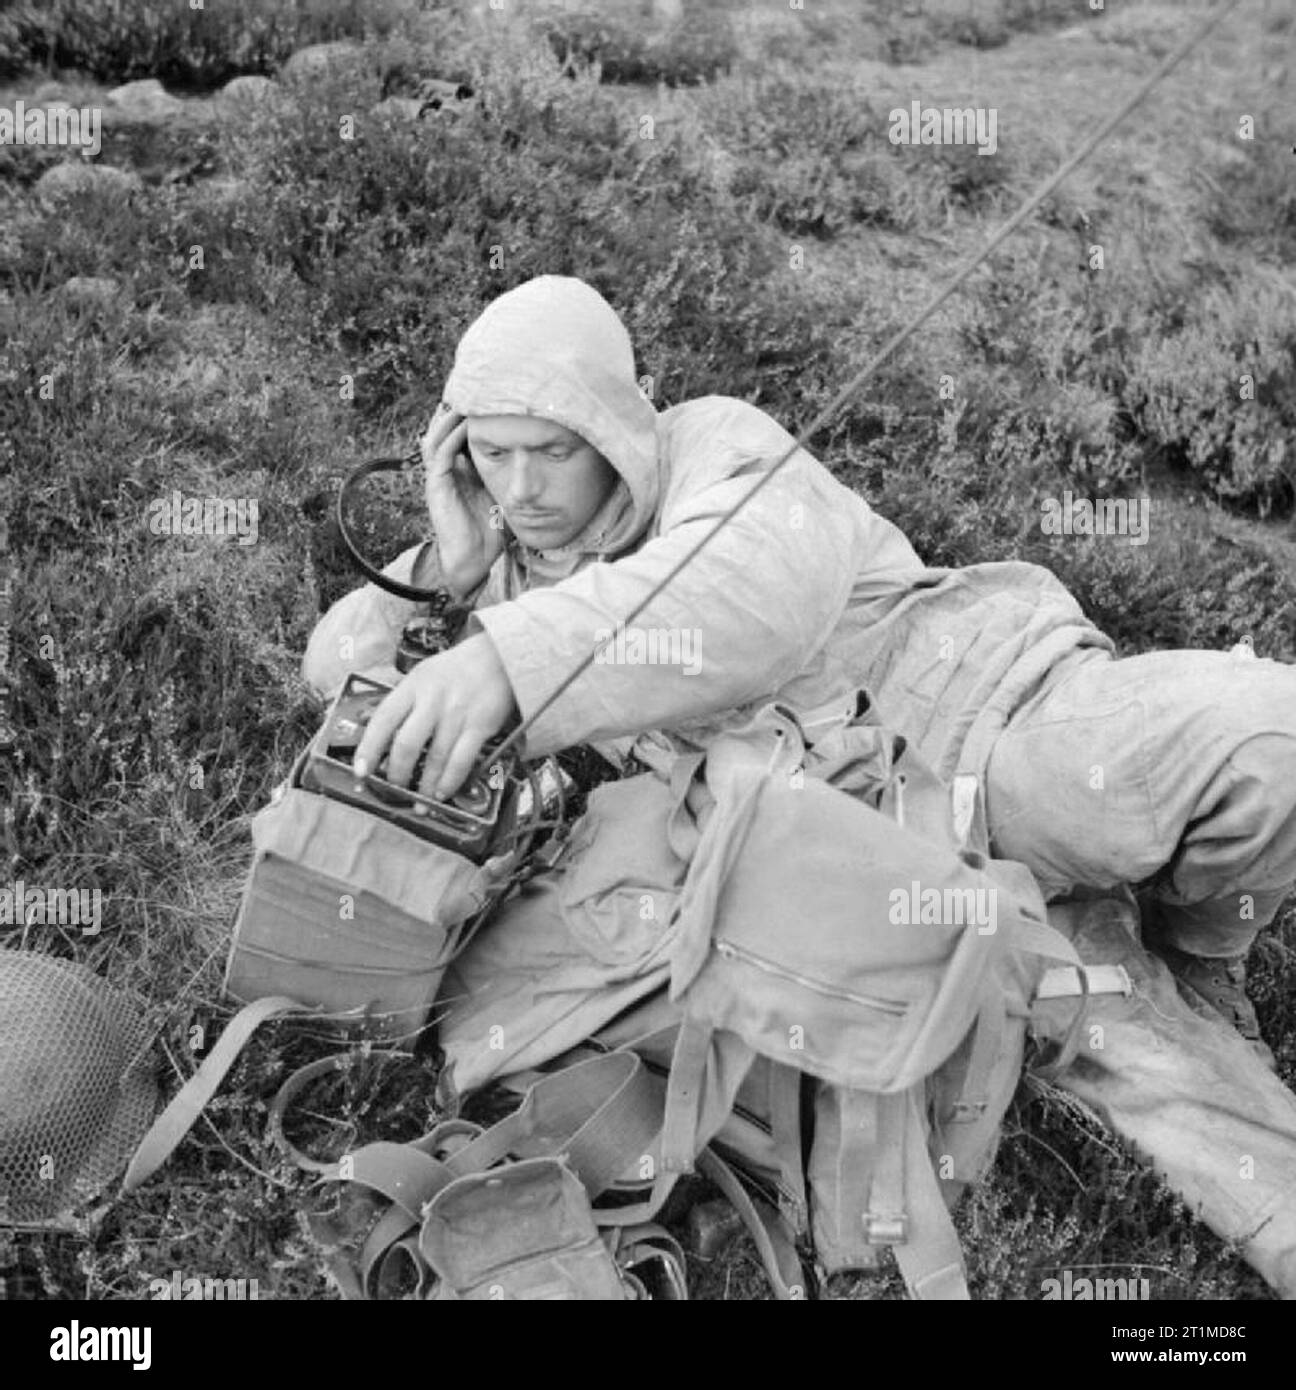 L'Armée britannique au Royaume-Uni 1939-45 opérateur radio d'5e bataillon, le Highland Light Infantry, dans la montagnes Monadhliath, Inverness, 22 octobre 1942. Remarque windproof smock et de pantalons. Banque D'Images